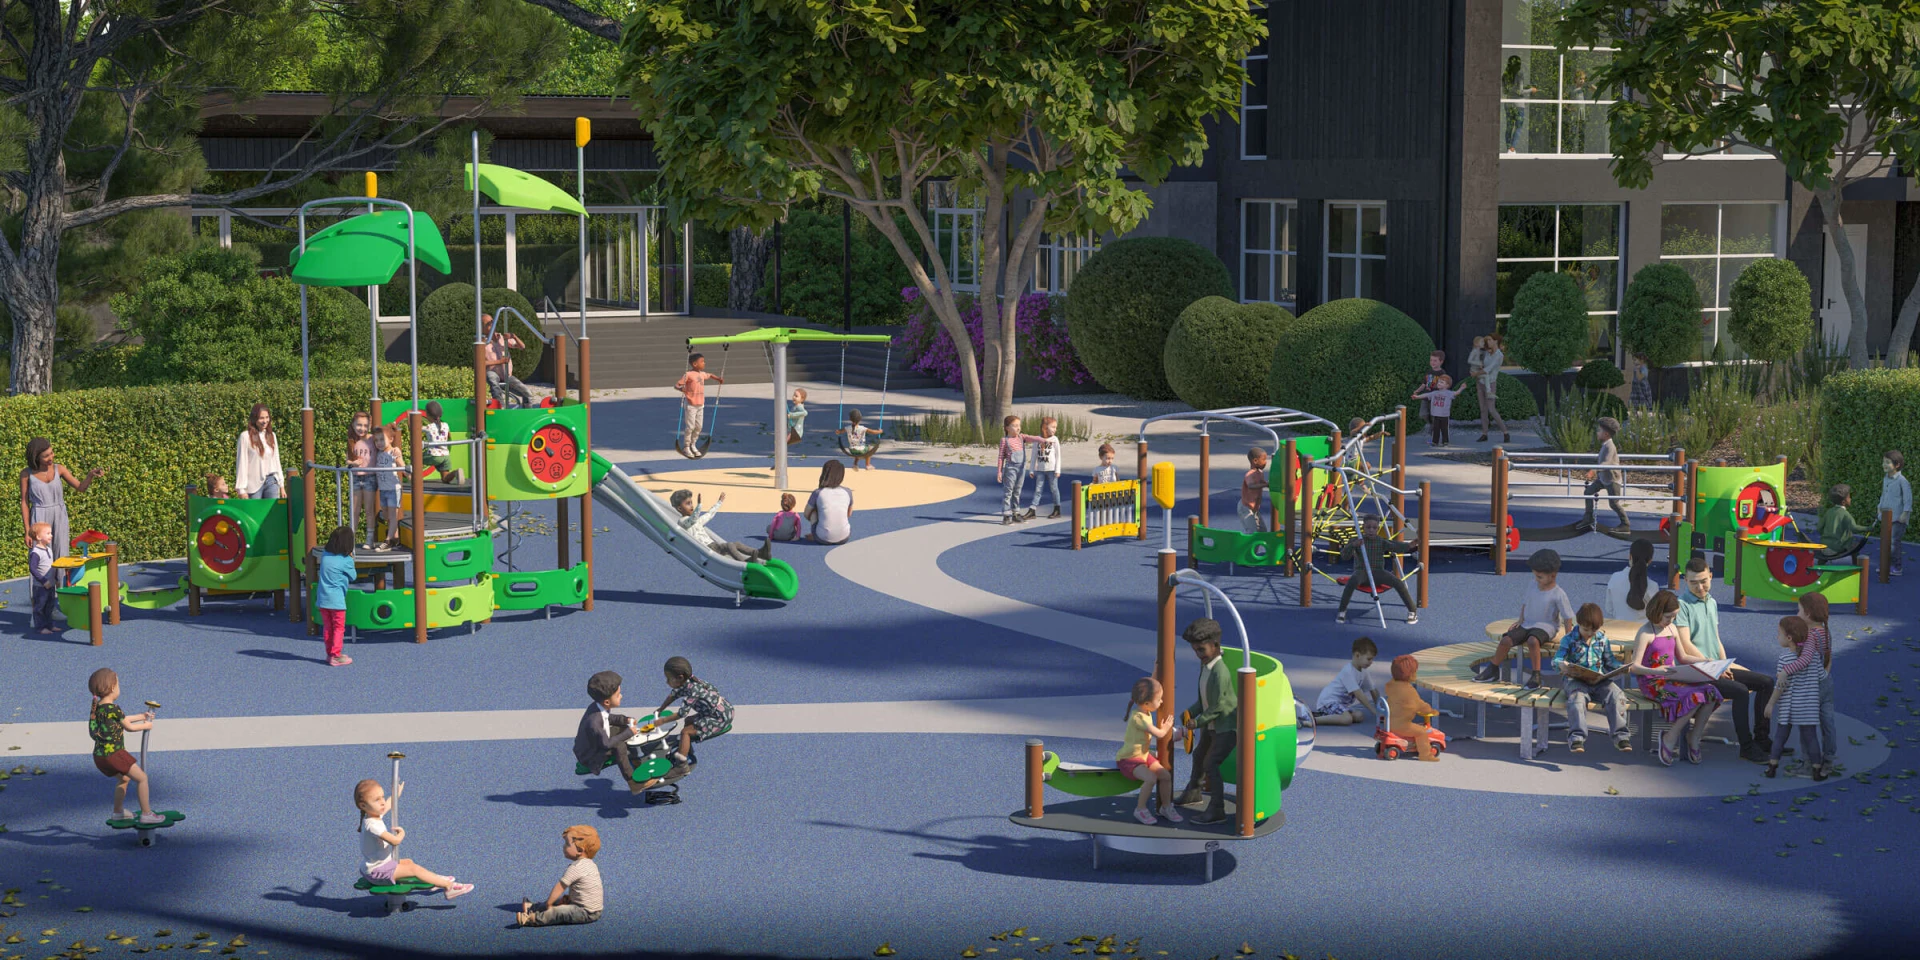 Idée de conception d'une aire de jeux avec de nombreuse possibilitées de jeux pour les enfants.